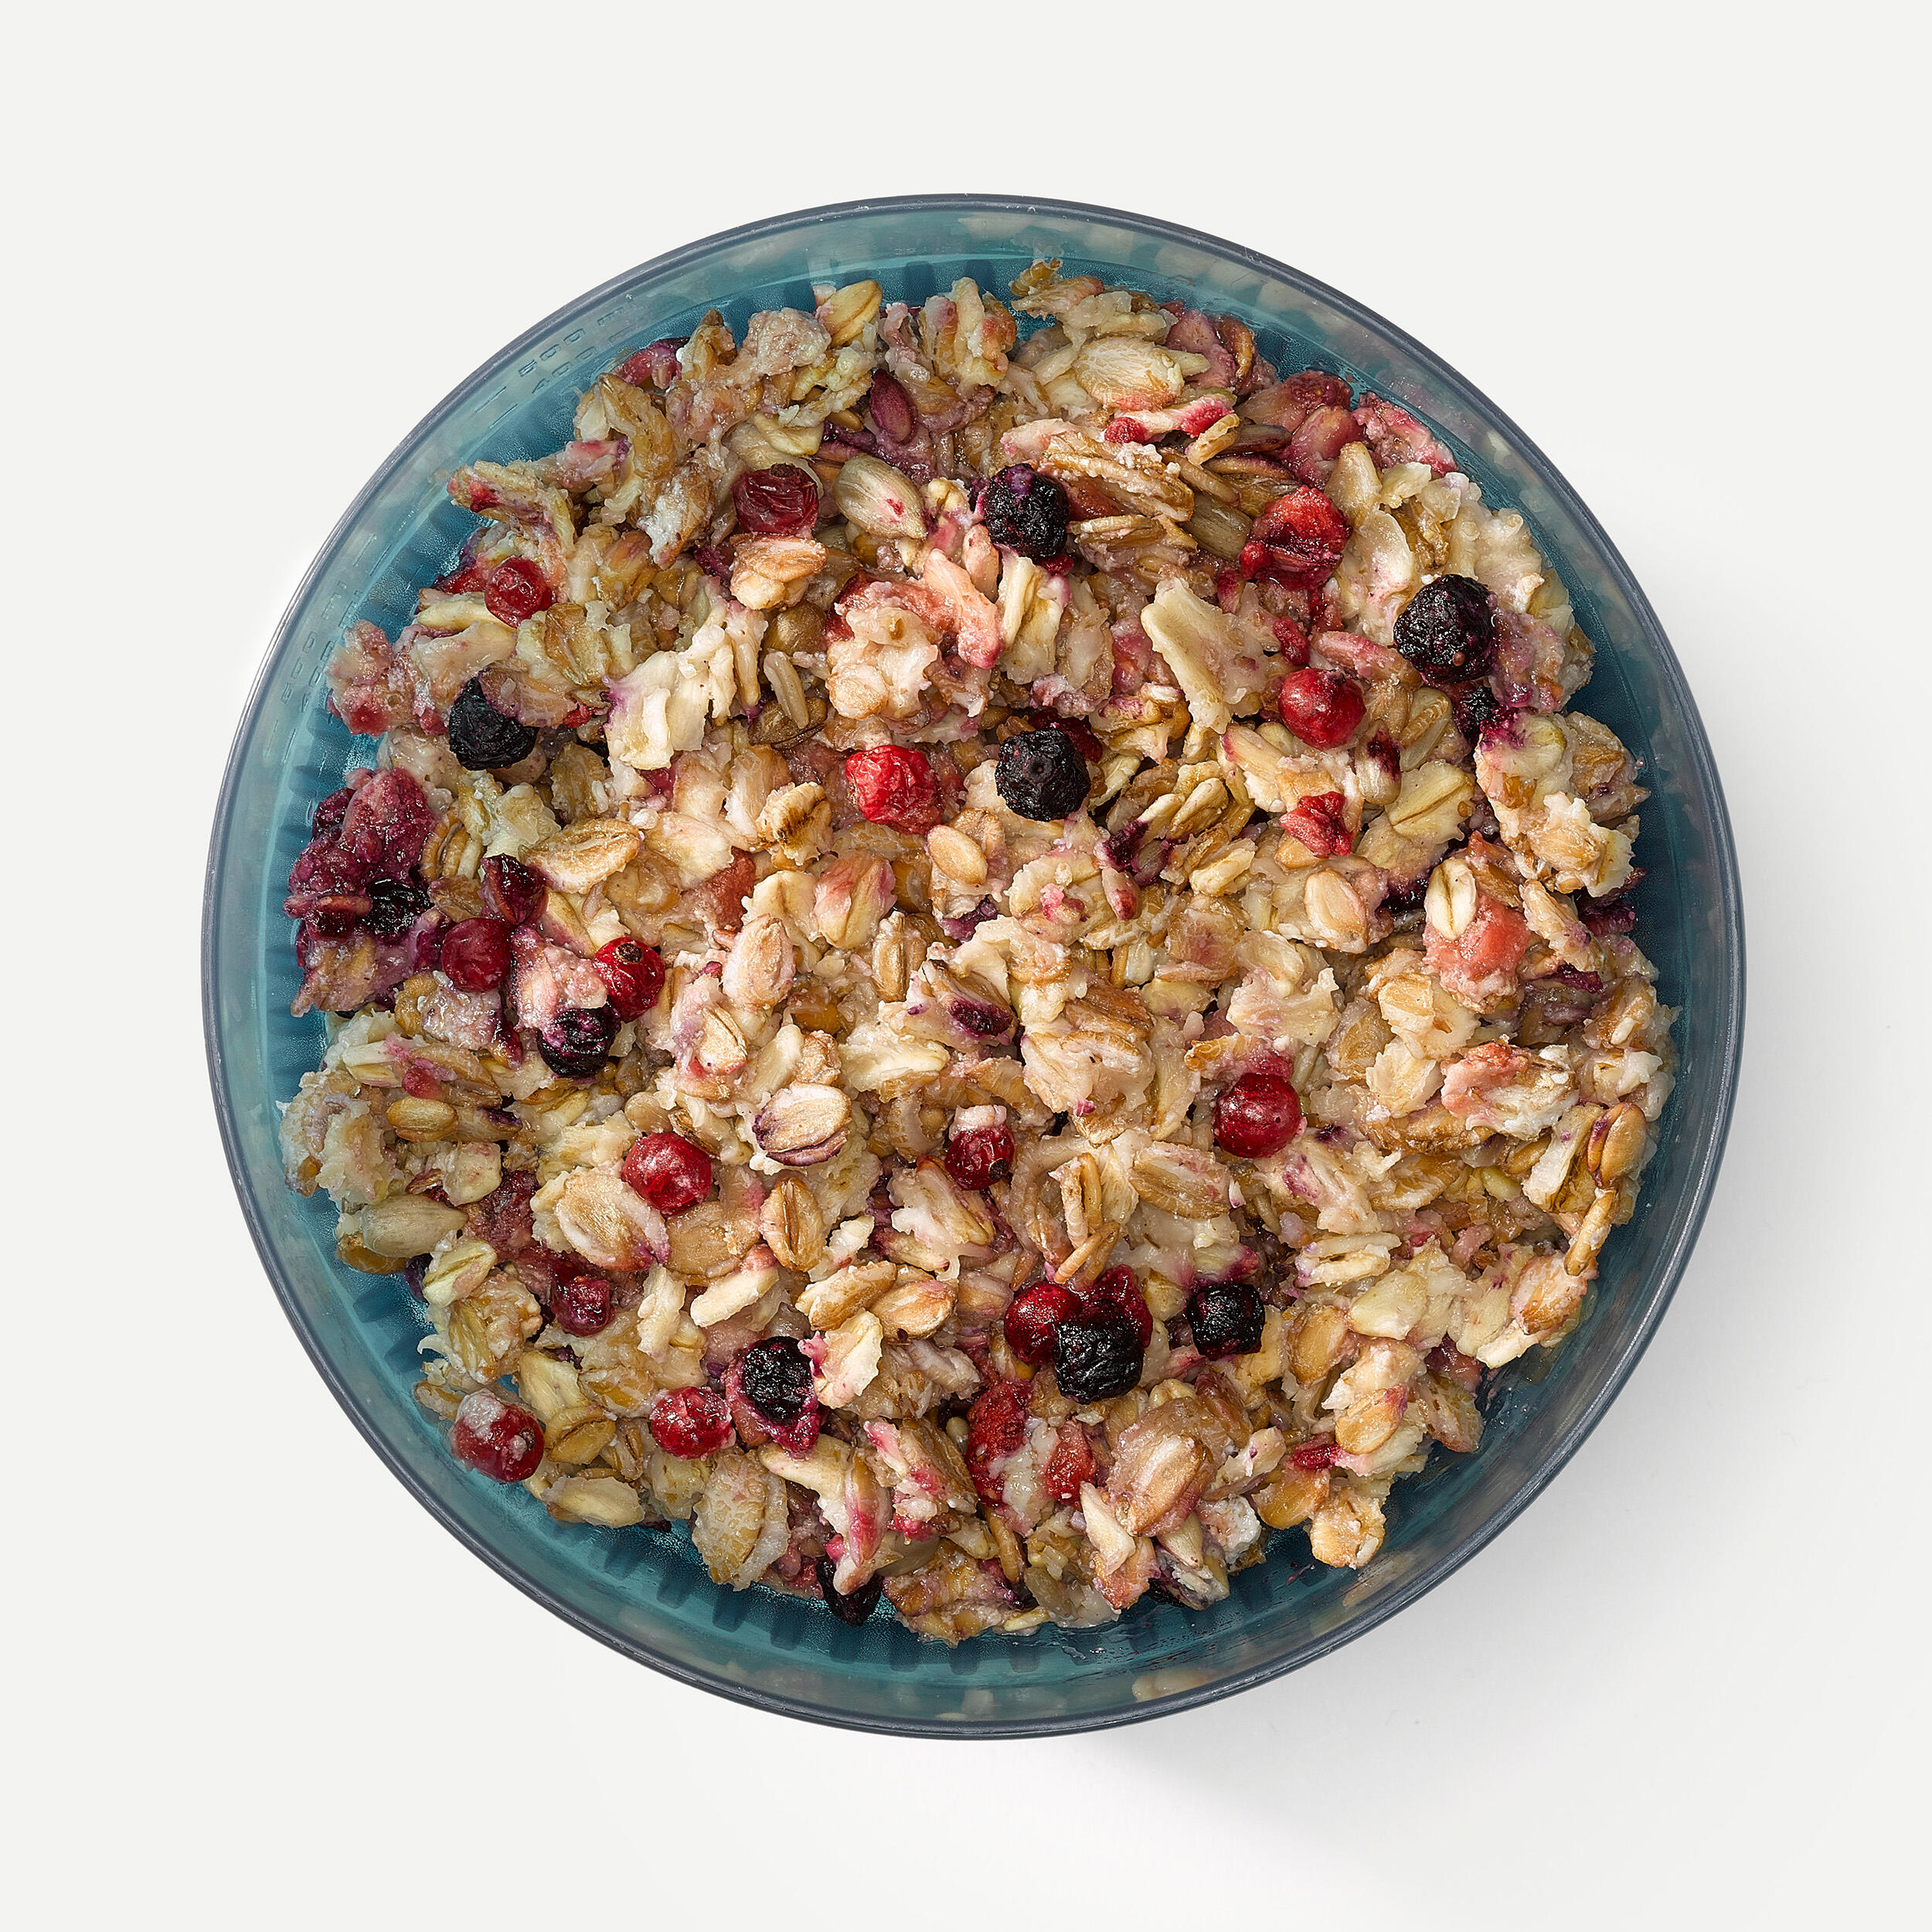 Breakfast - Red berries muesli - 100 g 2/3